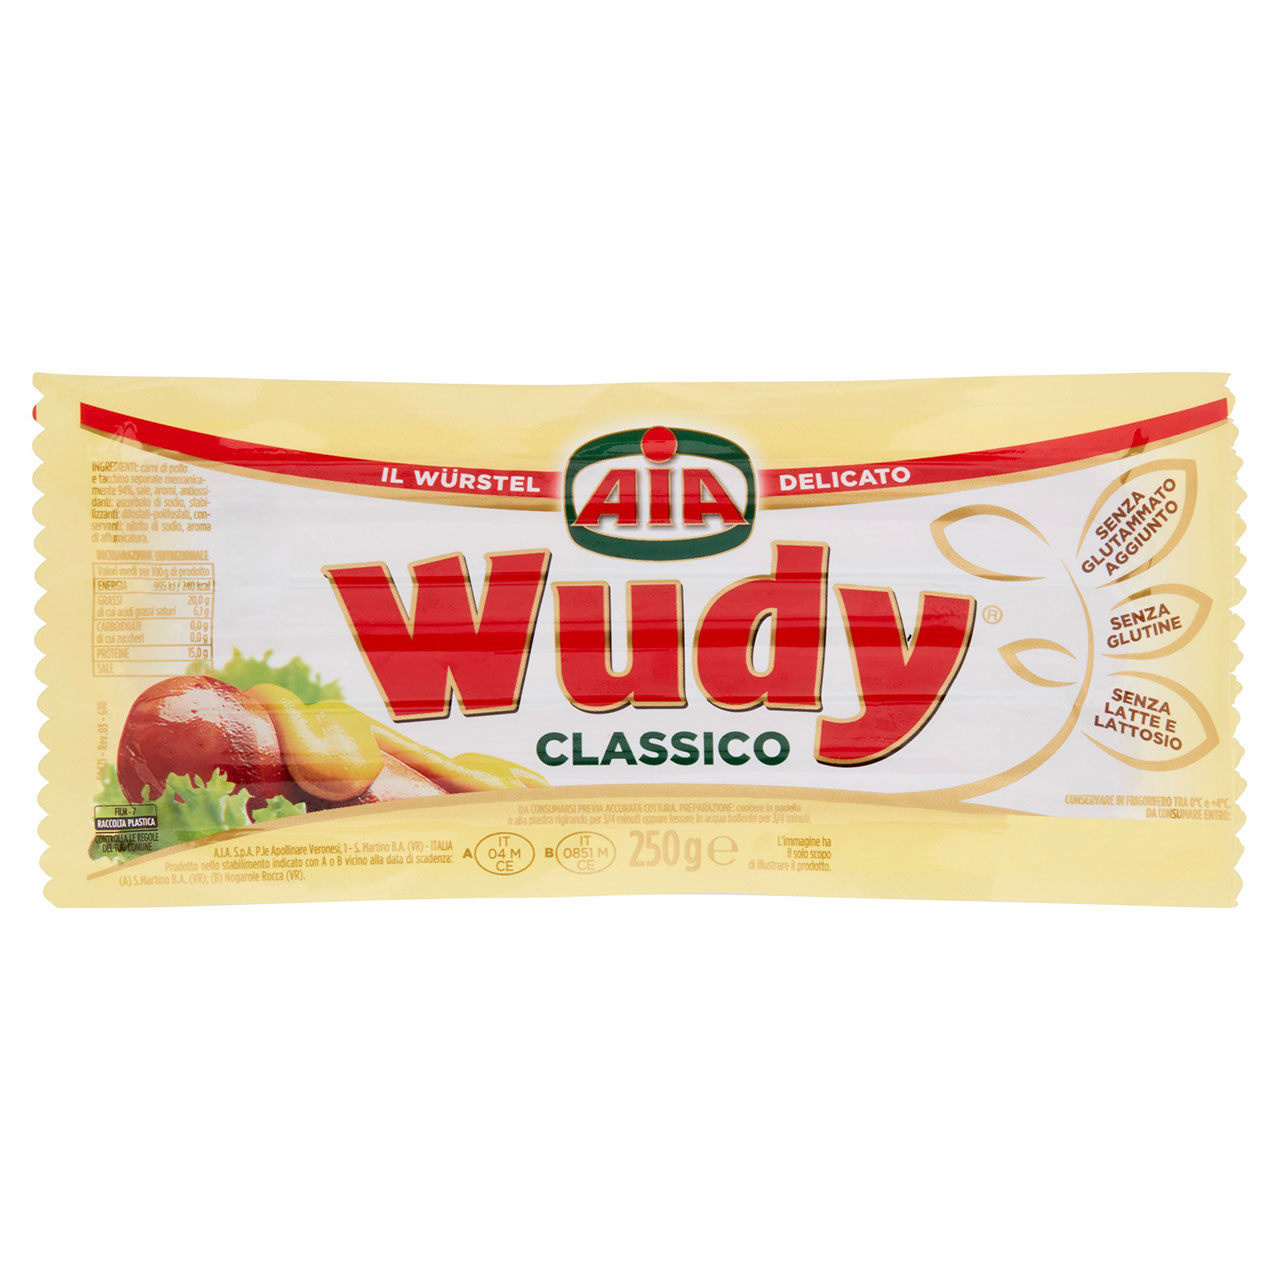 Aia Wudy Classico 250 g in vendita online